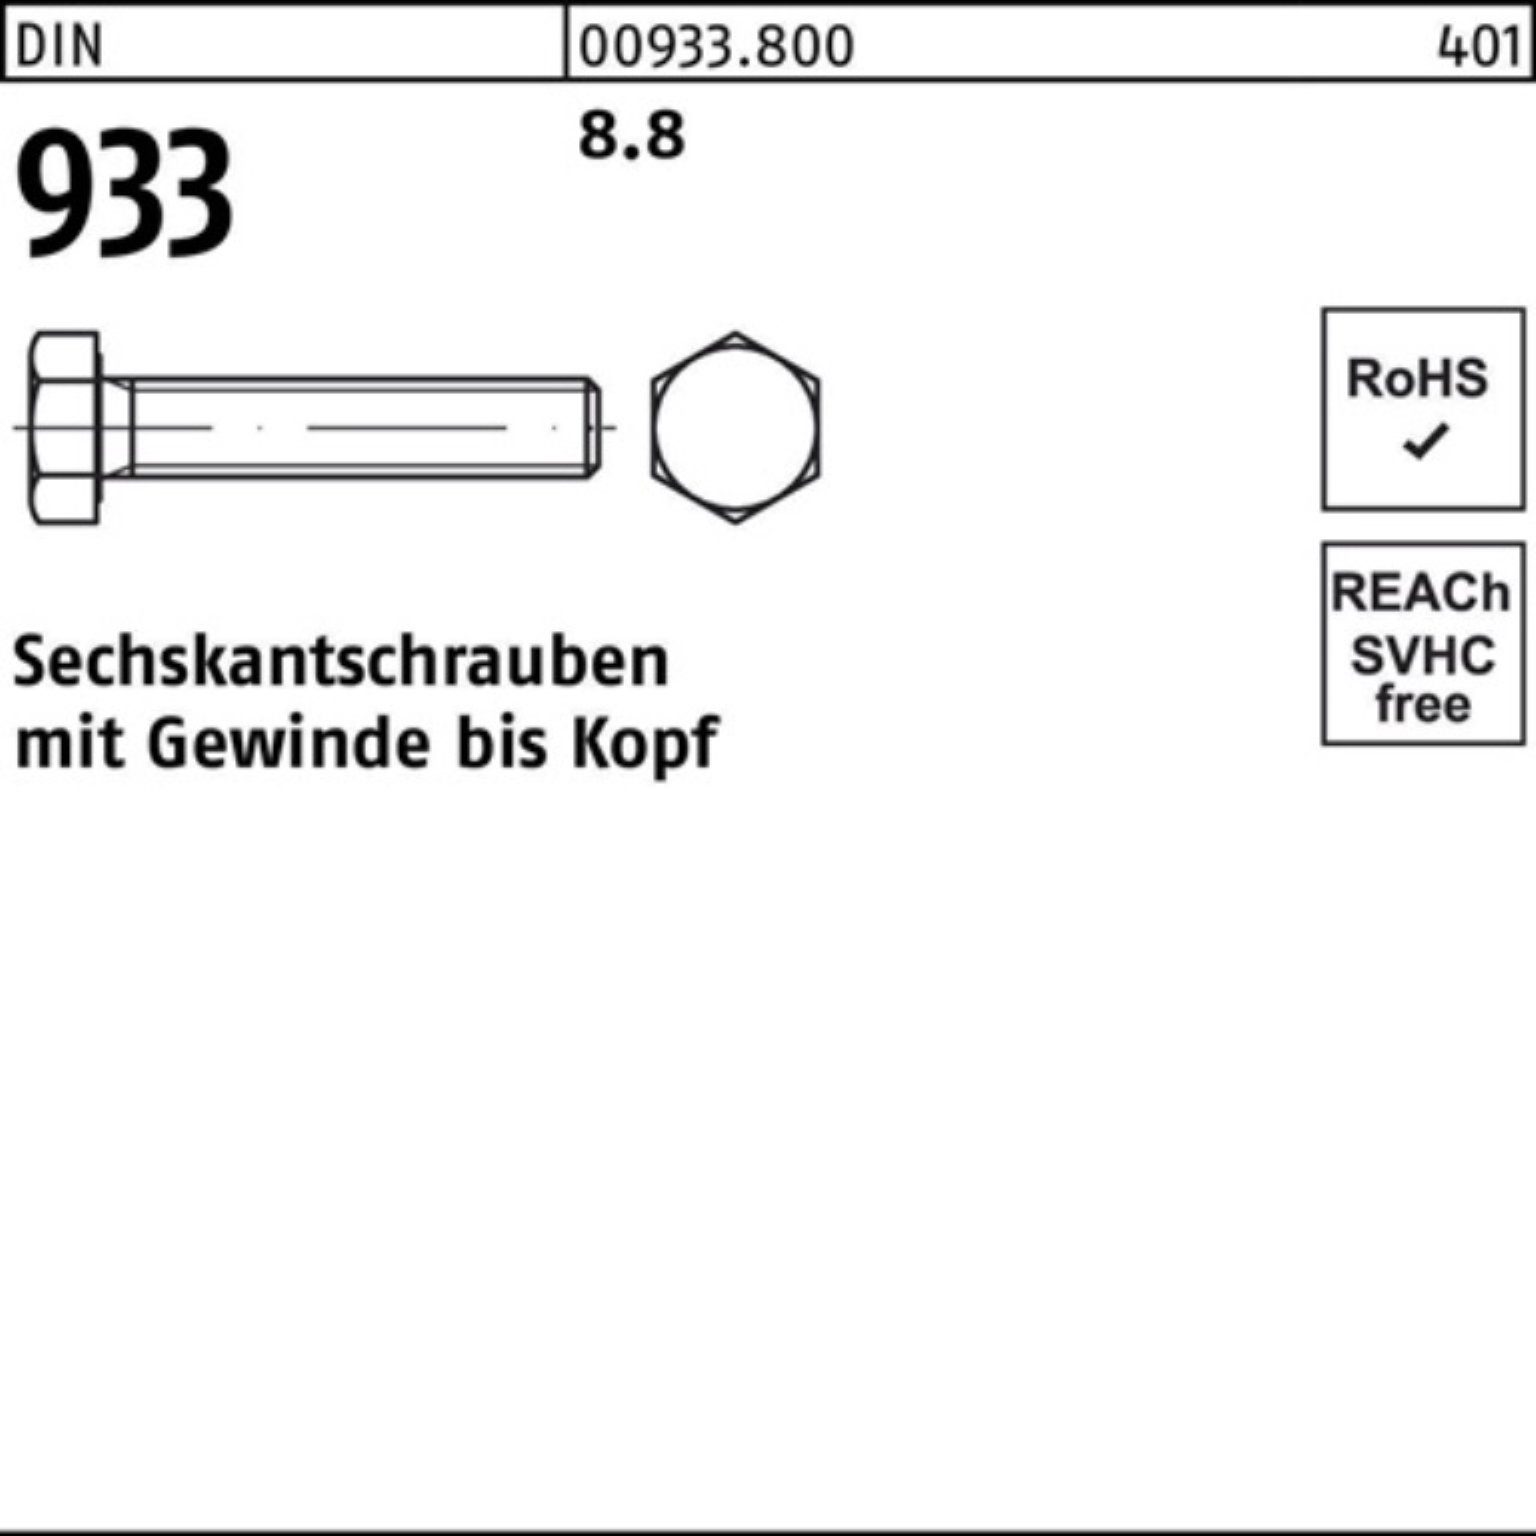 Reyher Sechskantschraube 500er 500 50 Sechskantschraube Pack 933 VG Stück 933 8.8 DIN M3x DIN